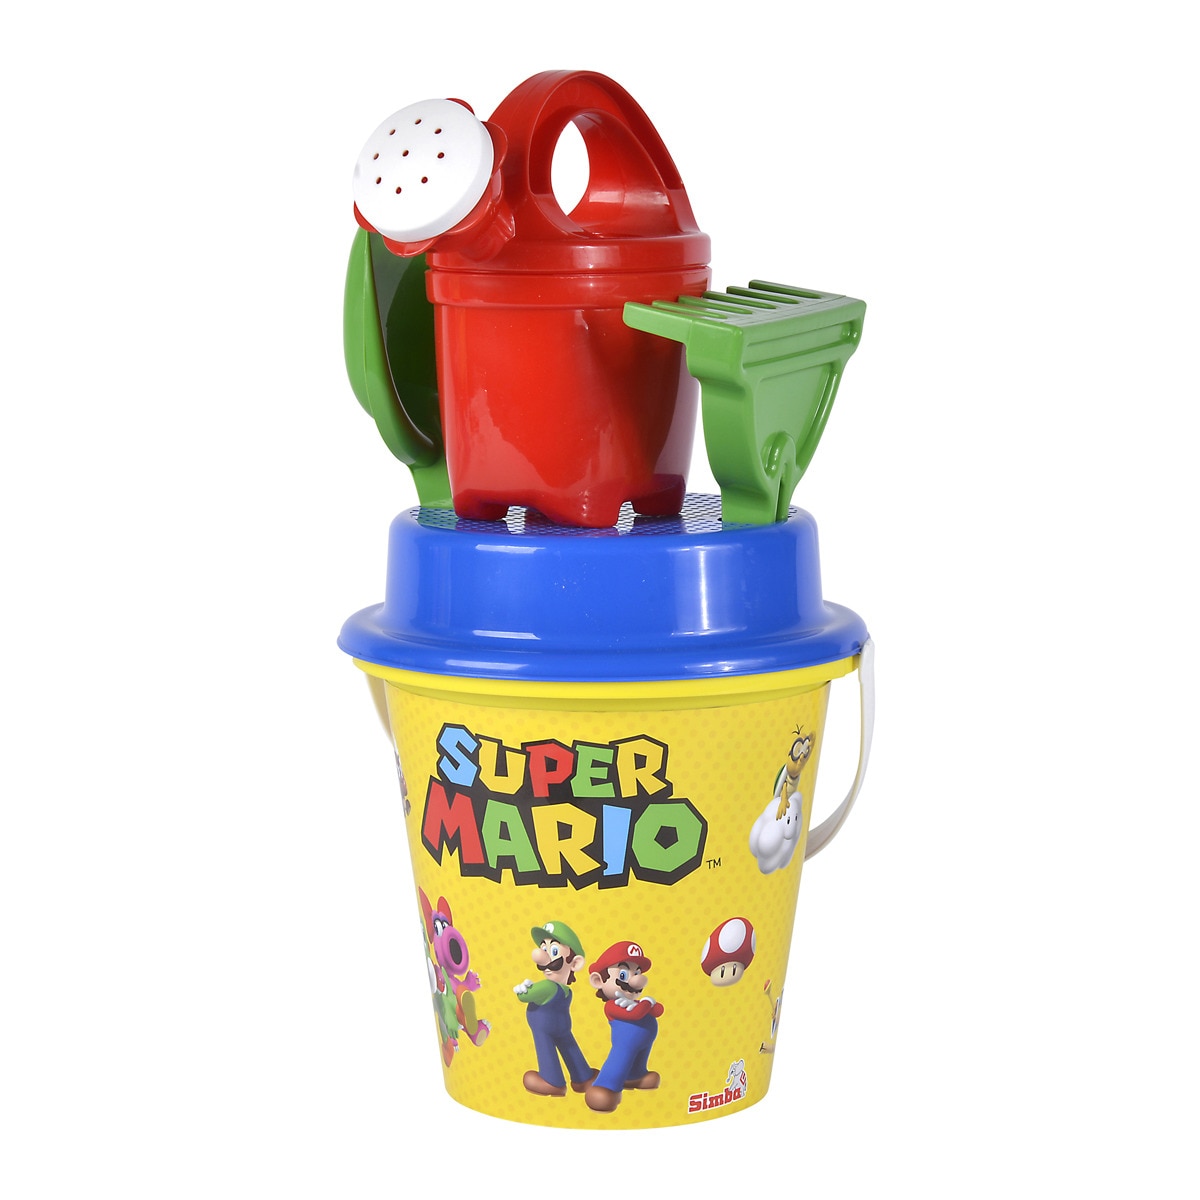 Smoby - Cubo Completo Super Mario